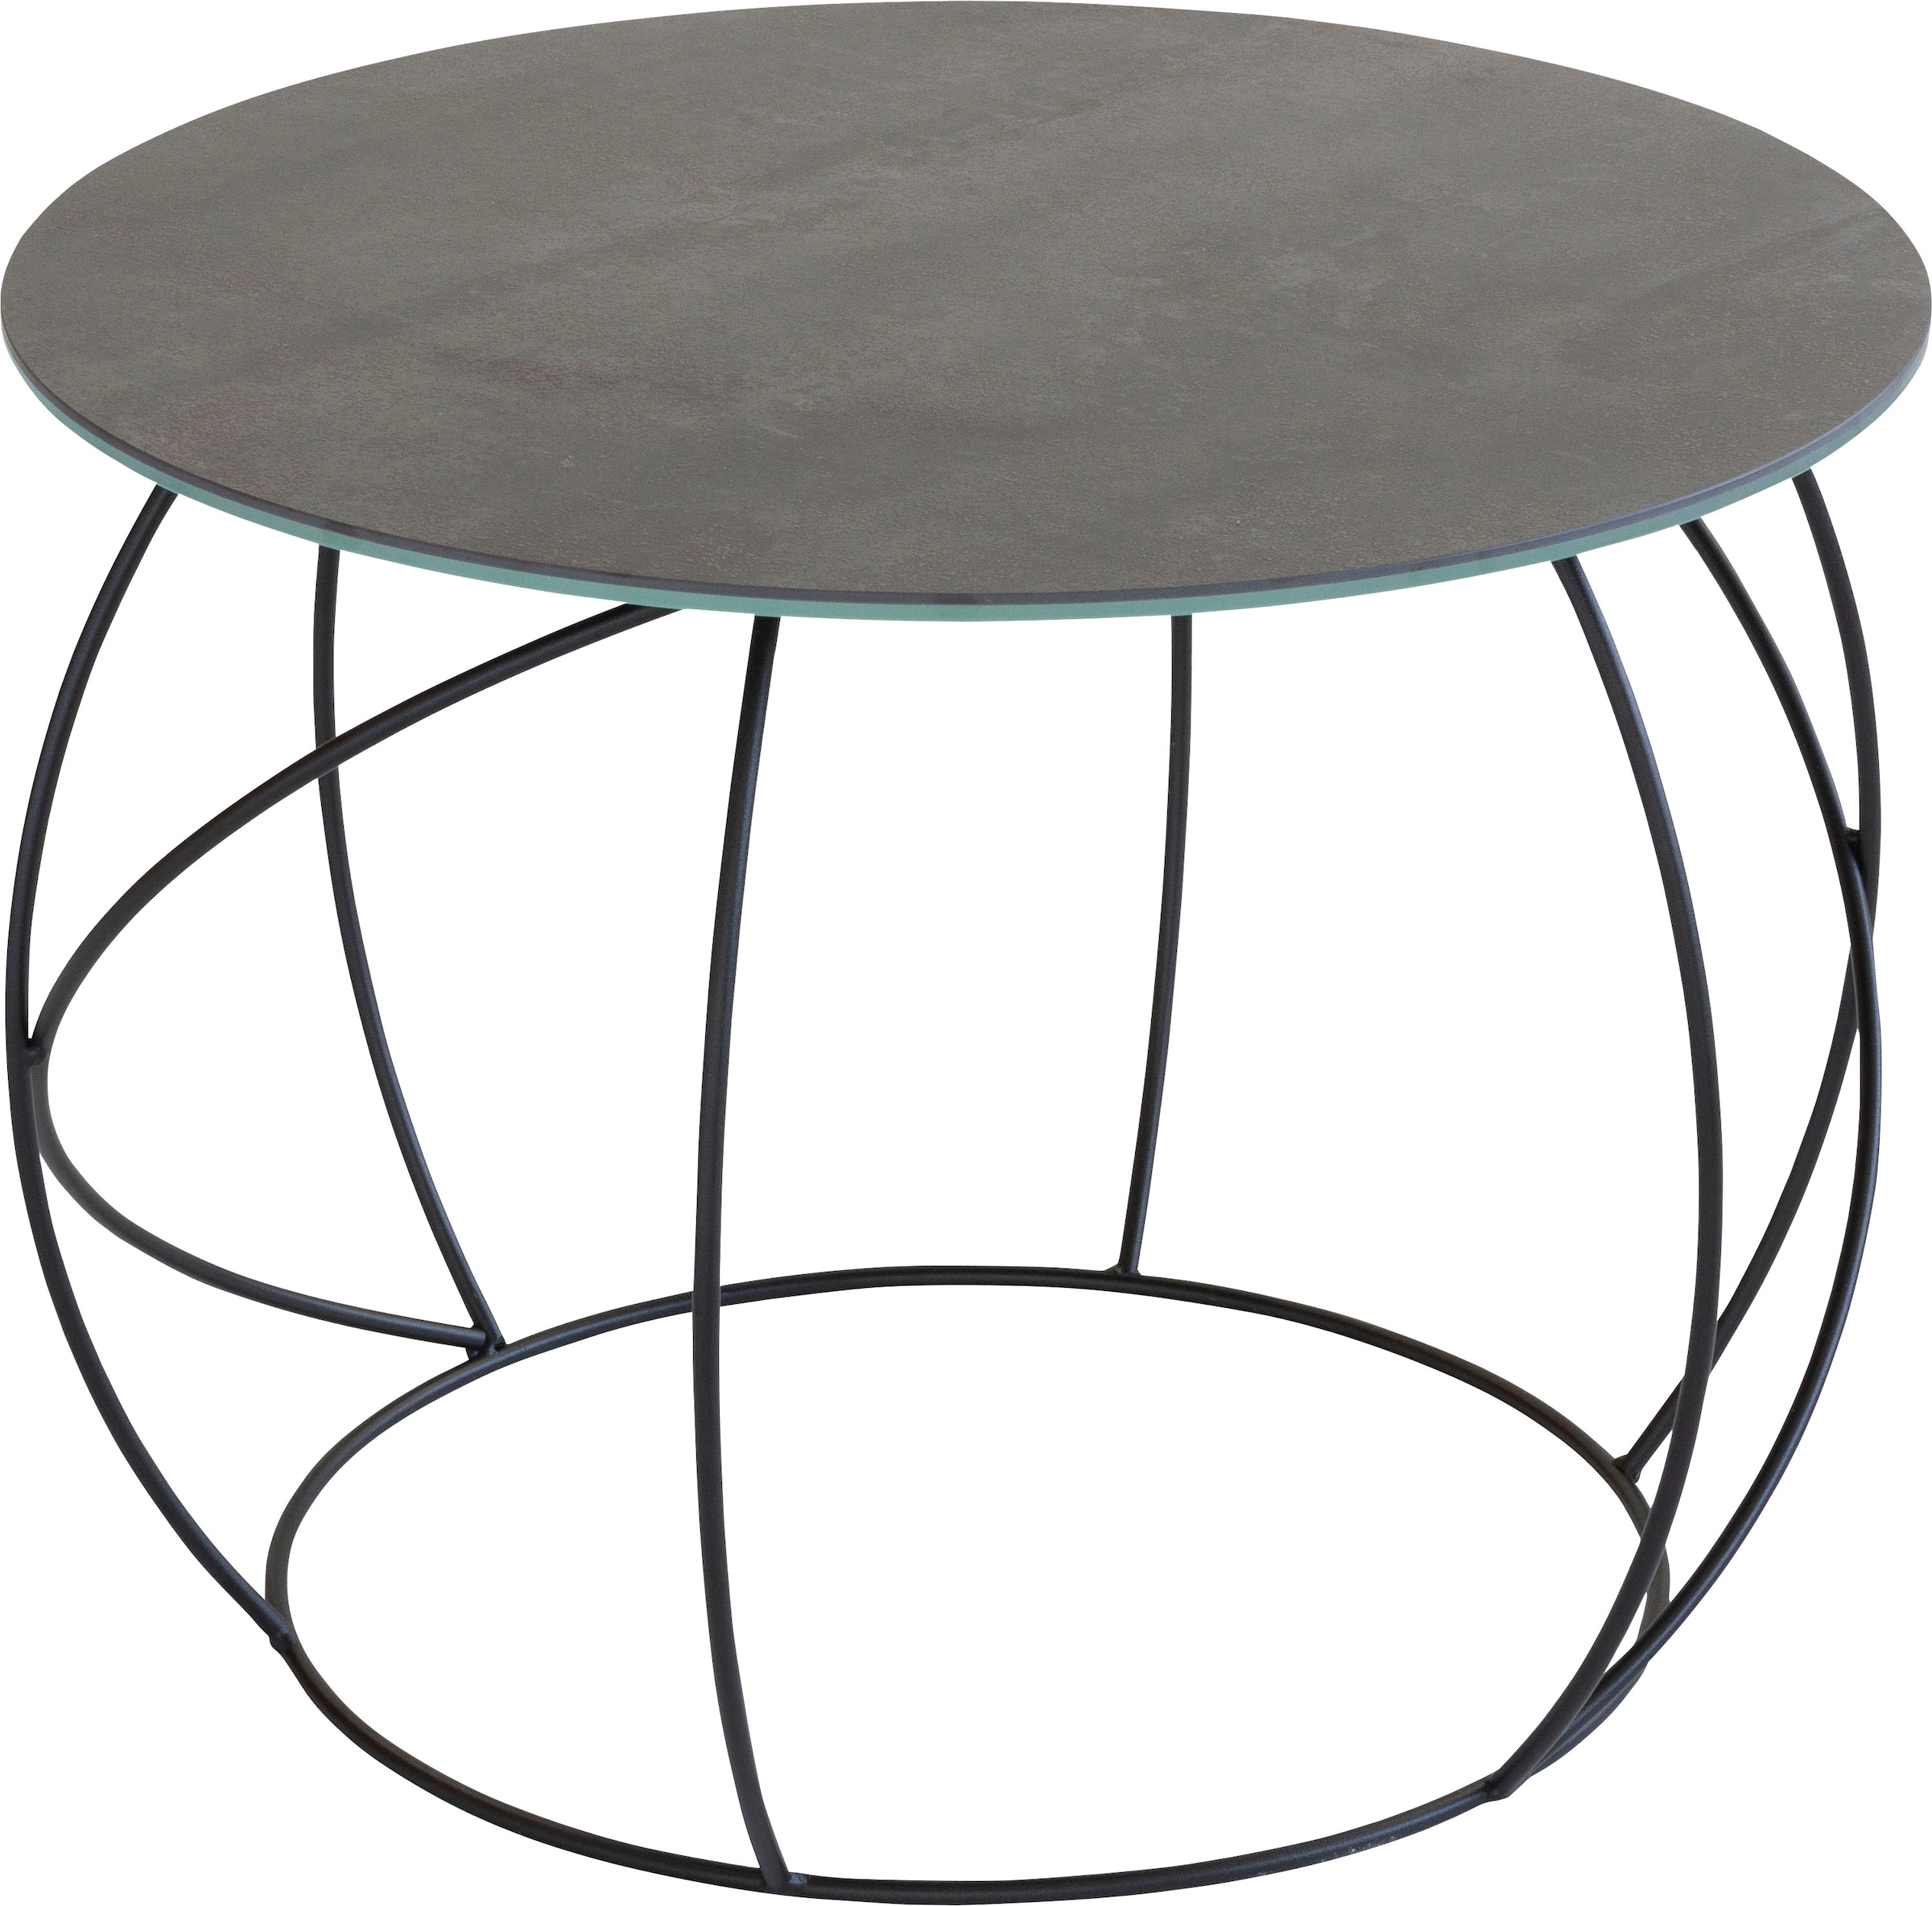 Möbel hochwertiger Keramik aus online Henke Tischplatte kaufen Beistelltisch,